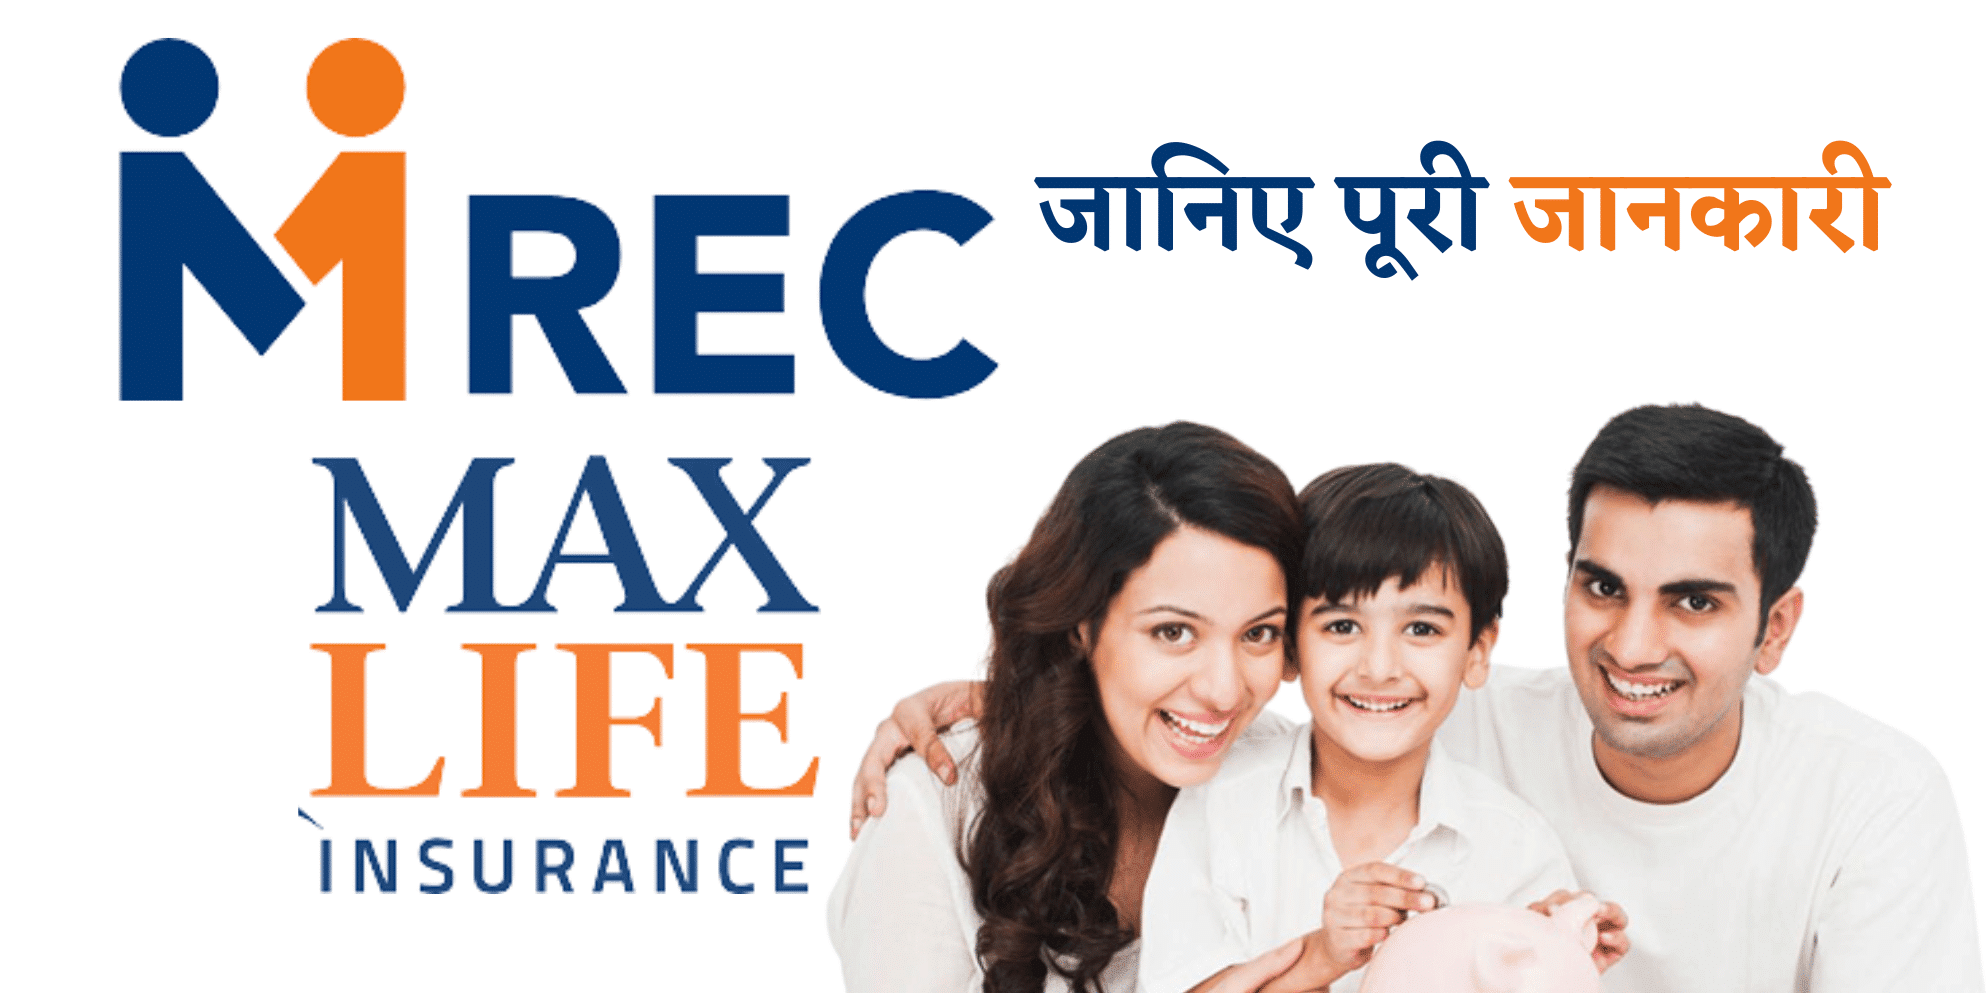 Mrec Max Life Insurance